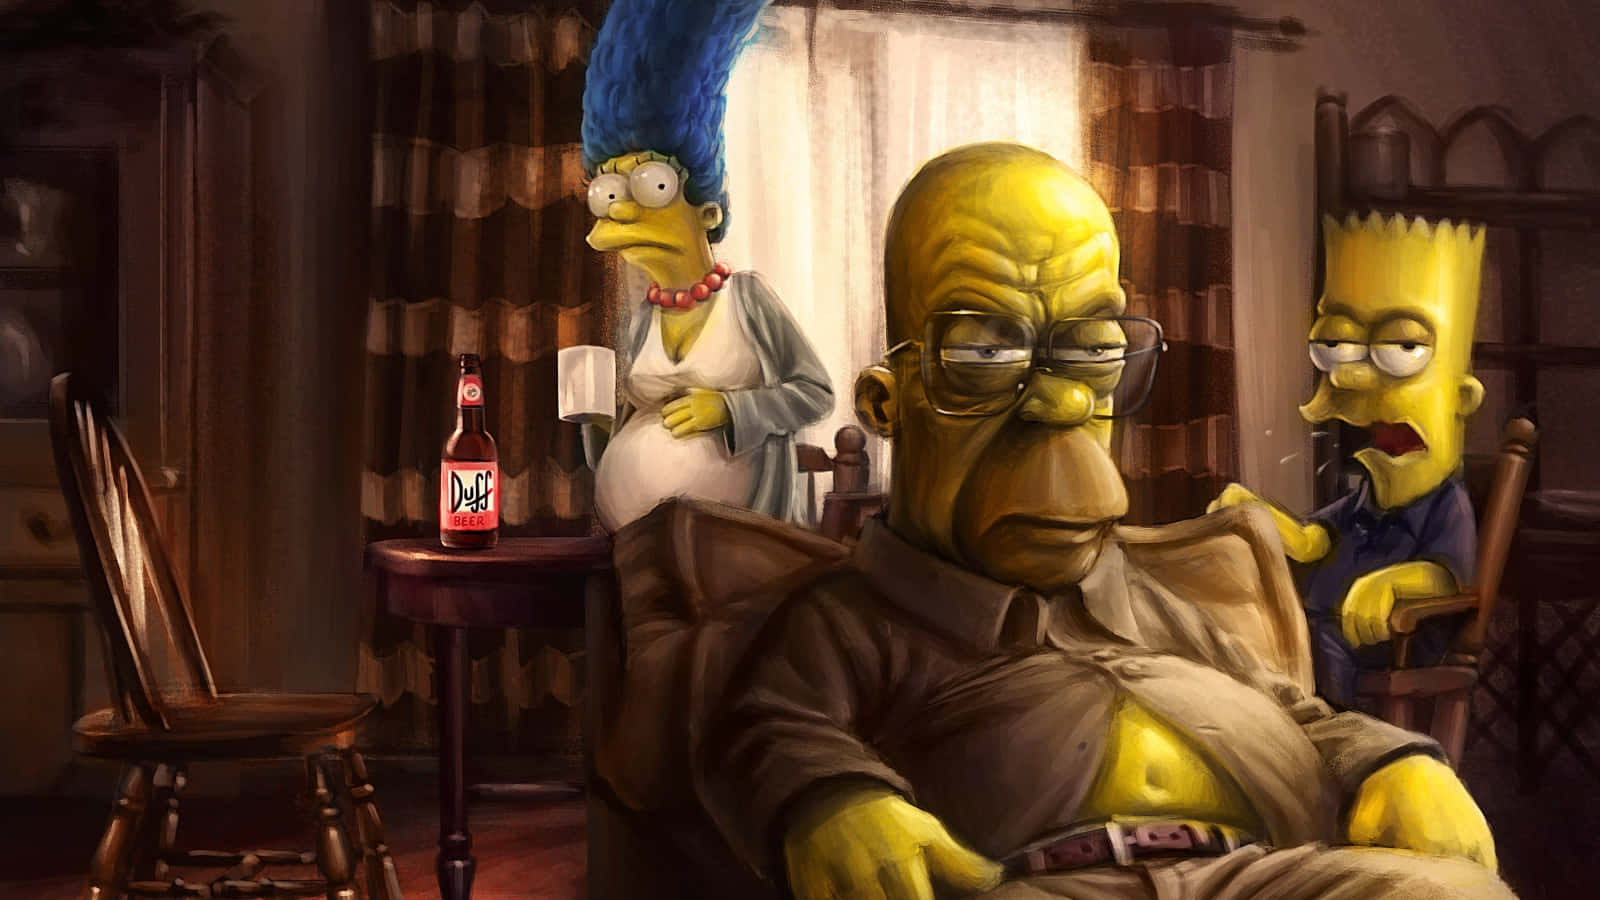 Simpsons billeder kan gøre ethvert computervægge se cool ud.